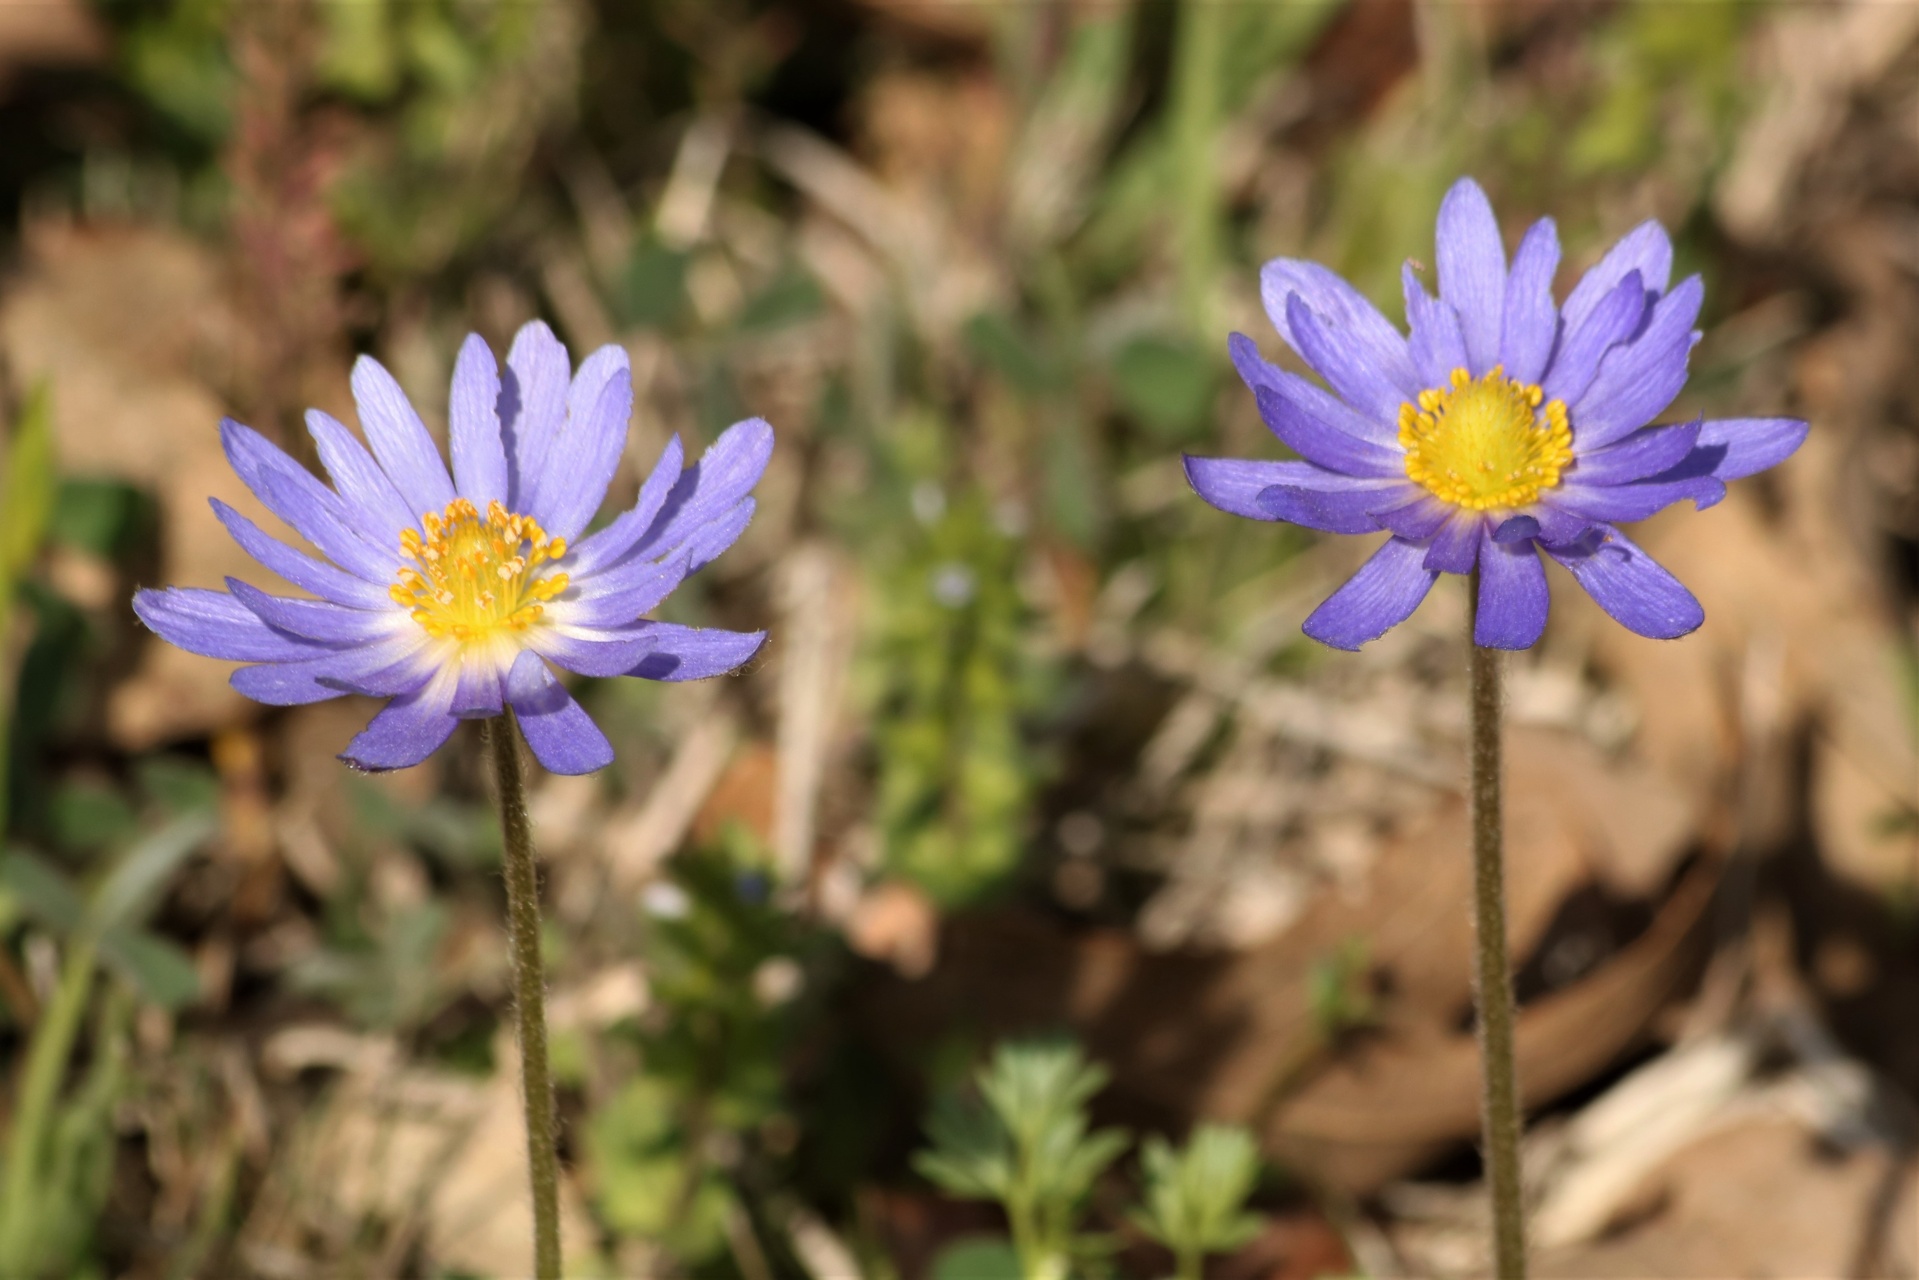 Two Purple Carolina Anemone Flowers